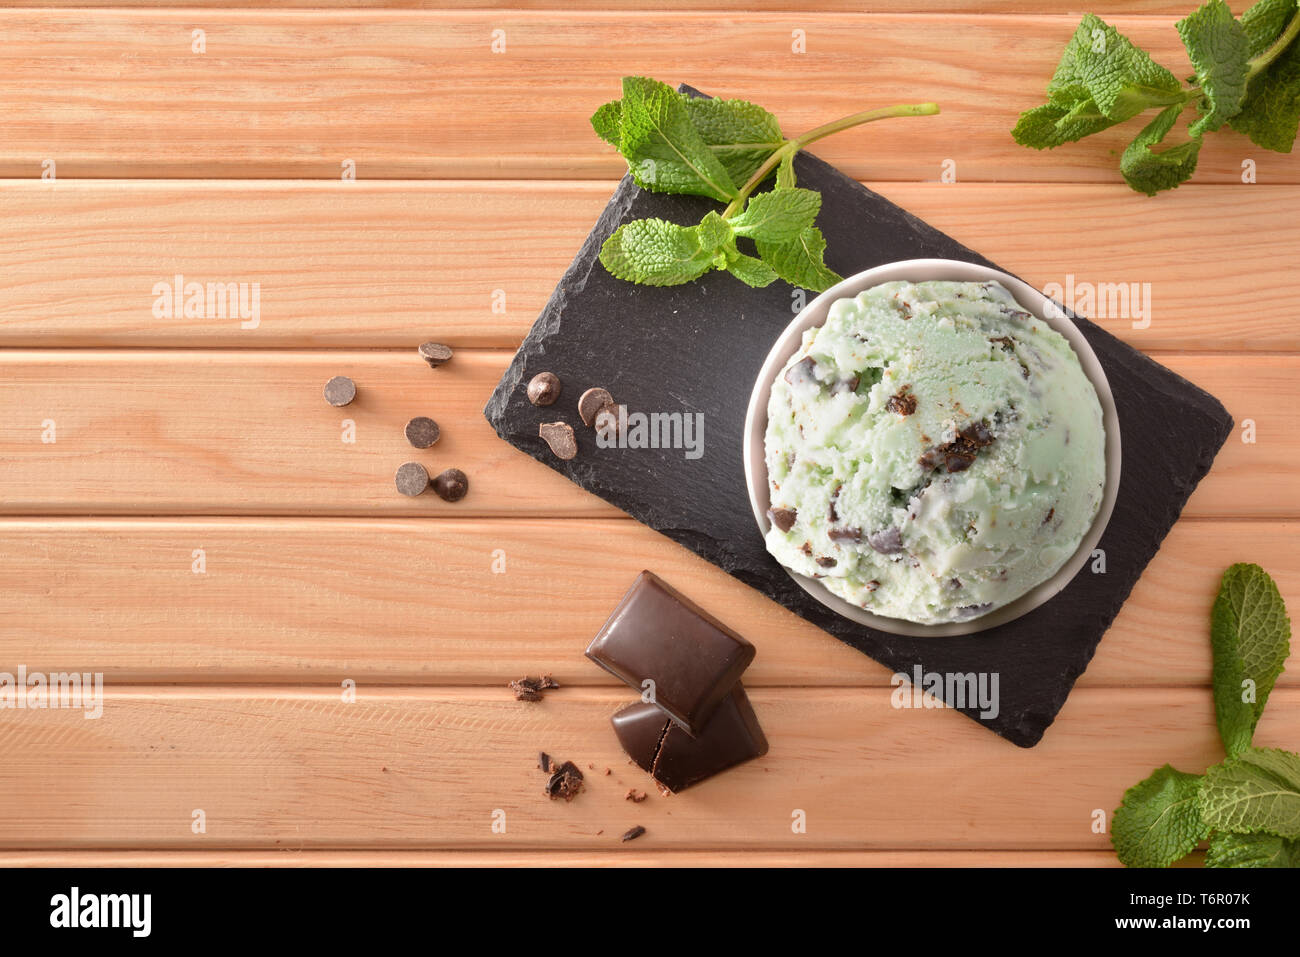 La menta e choco coppa di gelato decorato con foglie di menta e scaglie di cioccolato sul piatto di ardesia su un tavolo di legno. Composizione orizzontale. Vista dall'alto. Foto Stock